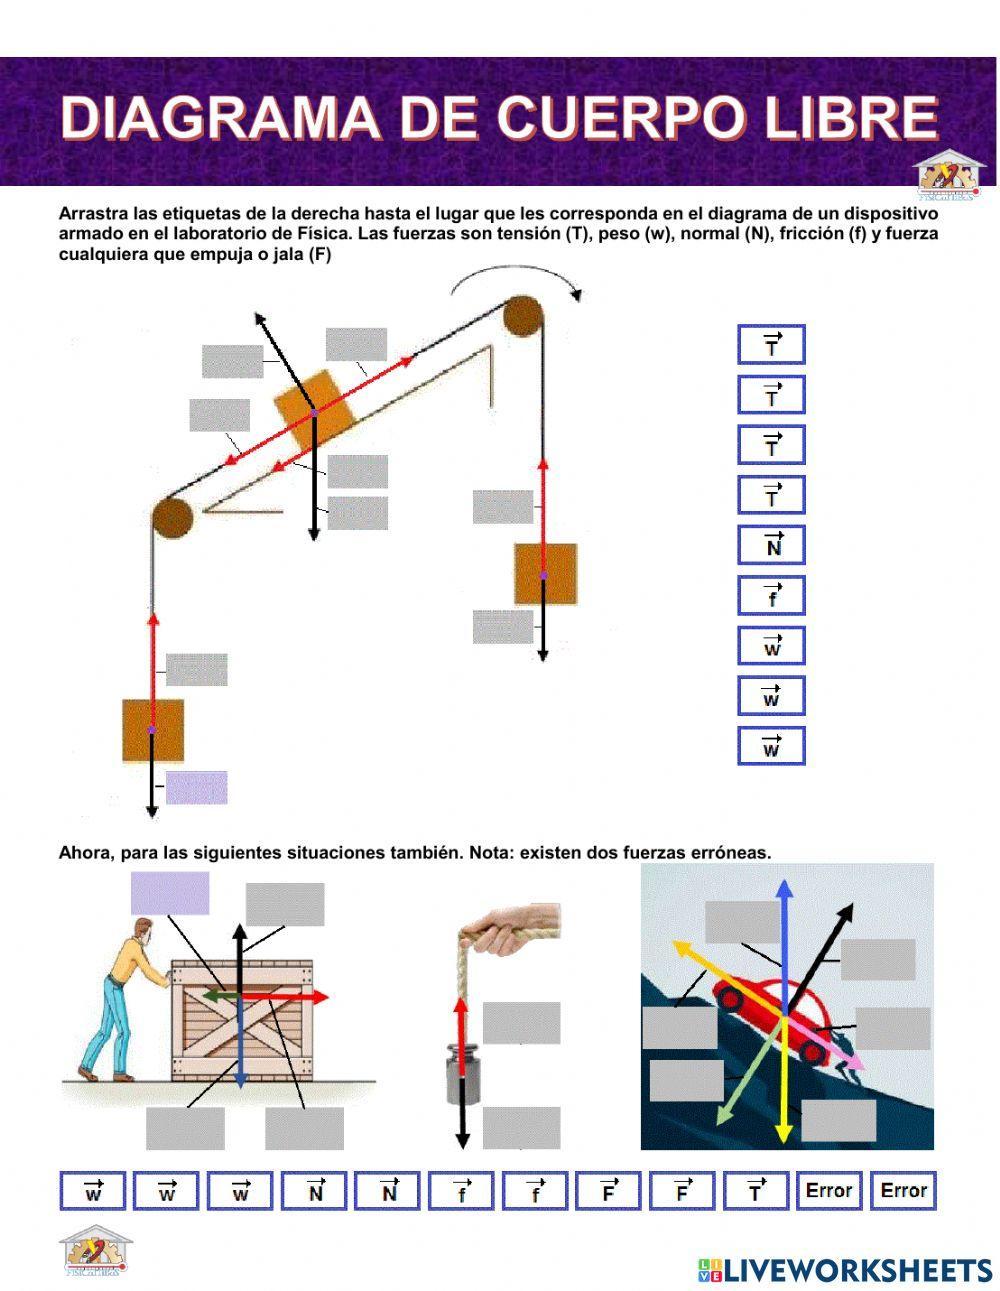 Diagrama de Cuerpo Libre interactive worksheet